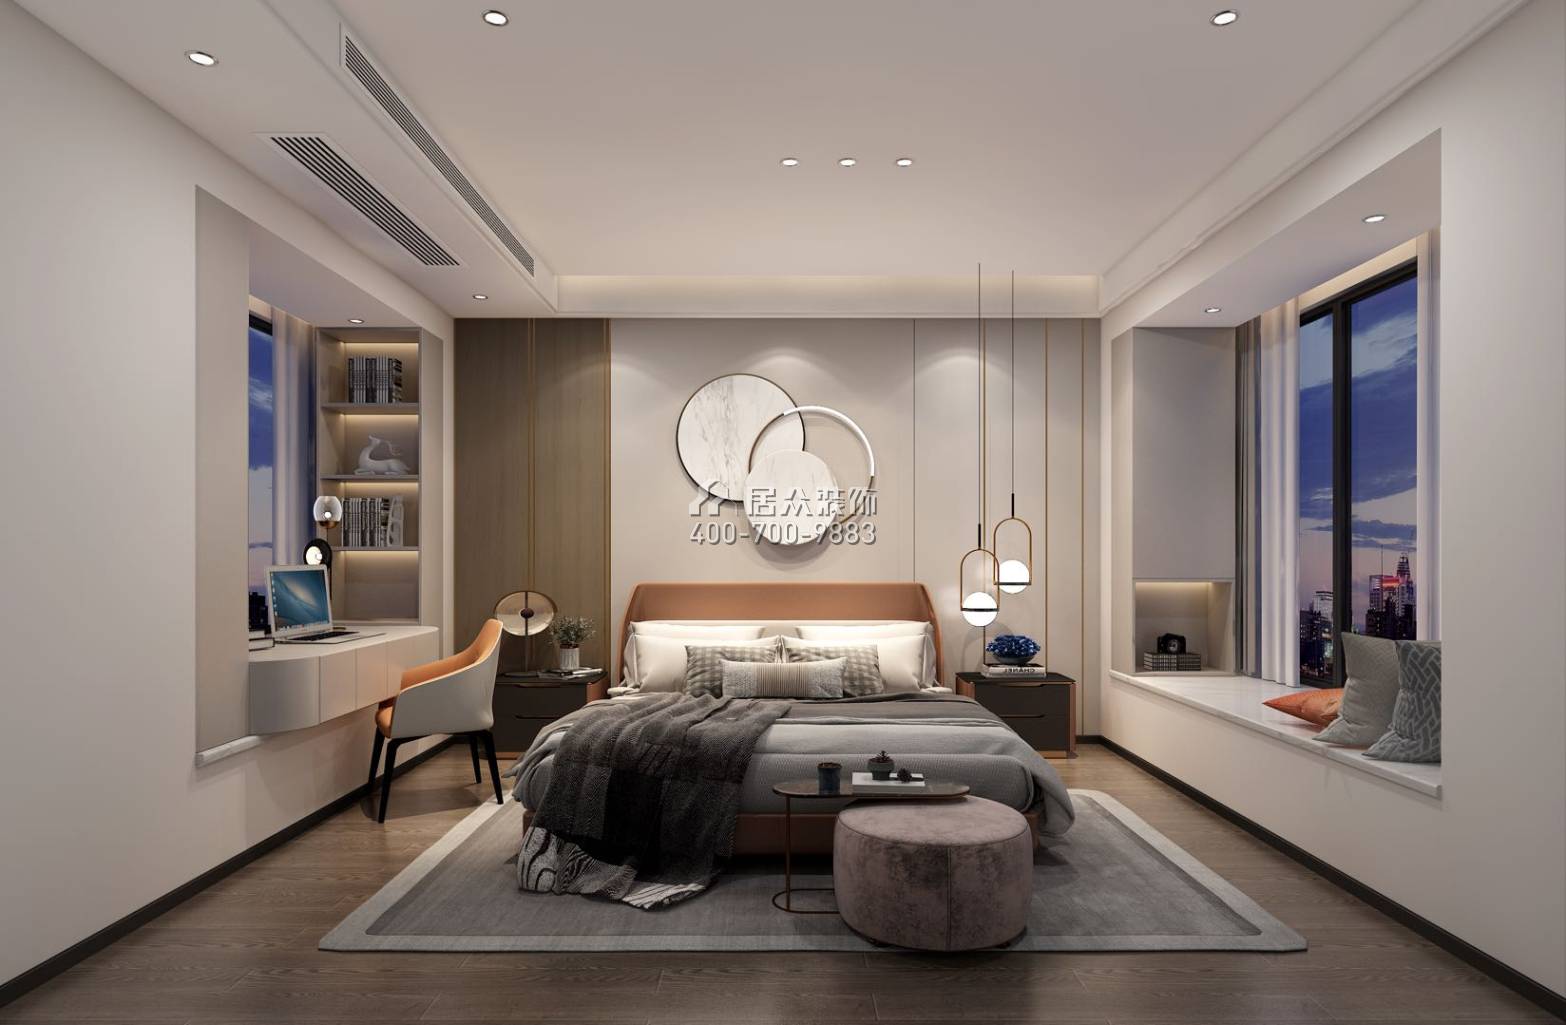 天鹅湖花园三期123平方米现代简约风格平层户型卧室装修效果图